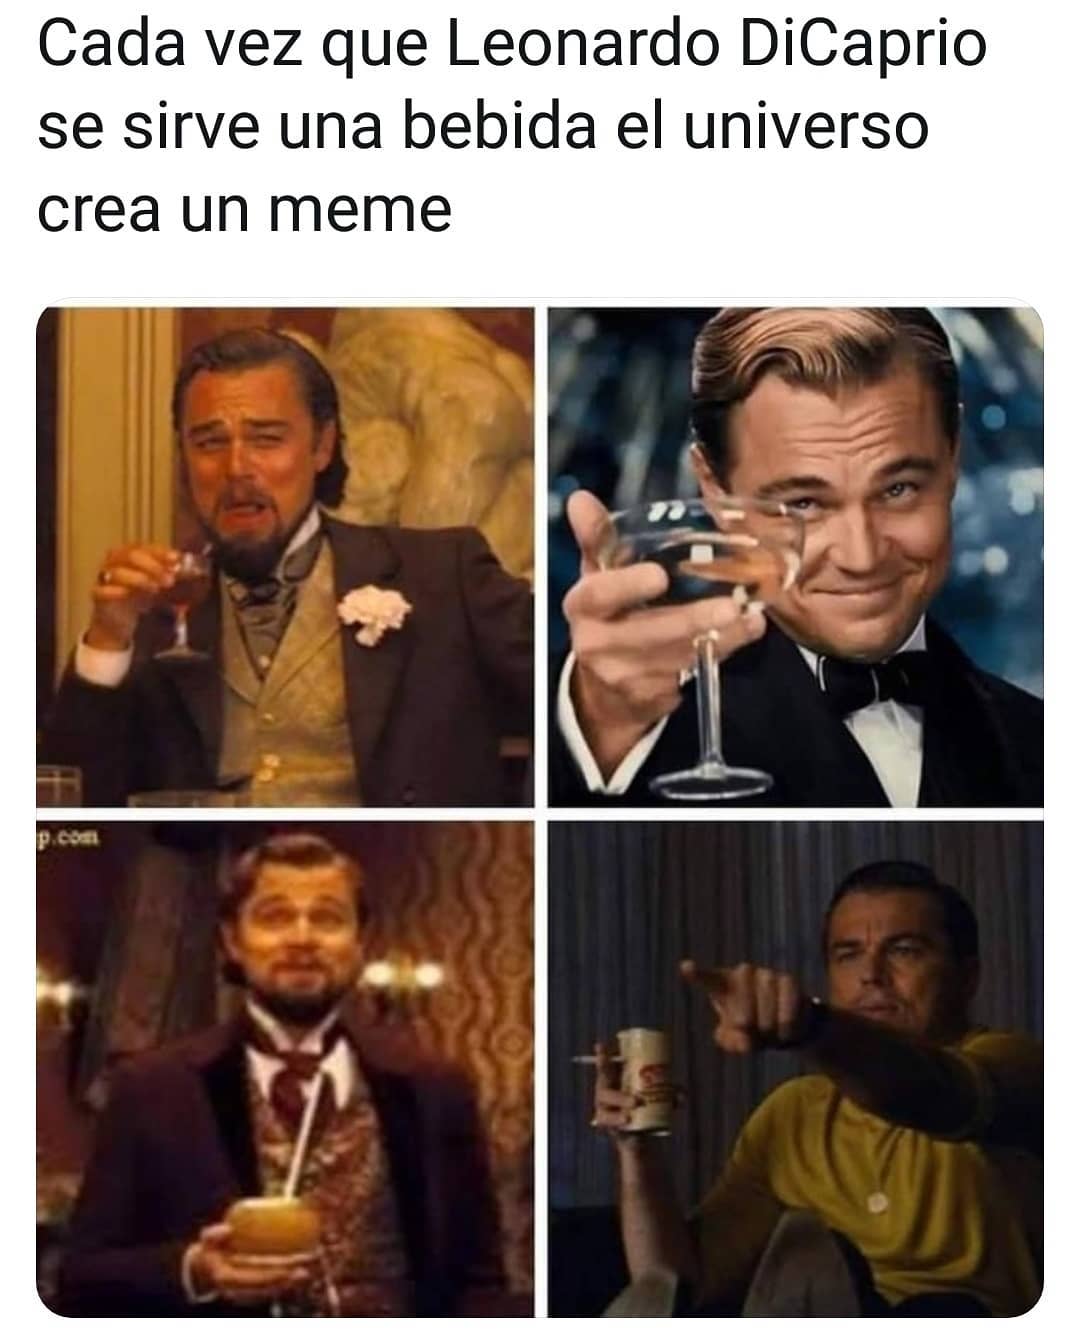 Cada vez que Leonardo DiCaprio se sirve una bebida el universo crea un meme.